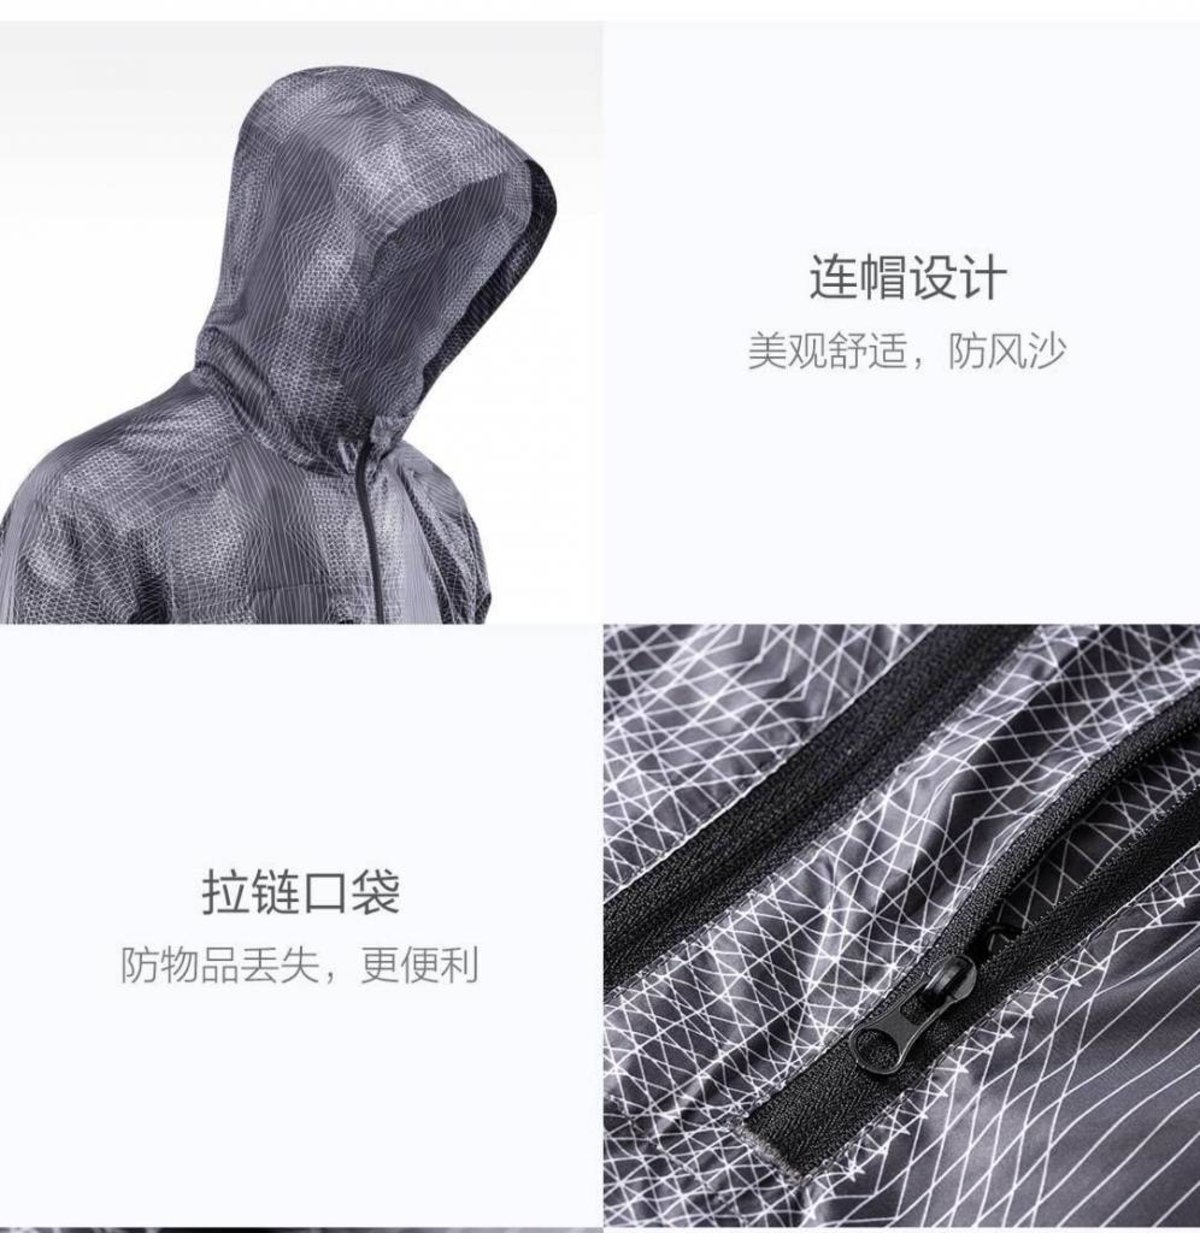 U'revo, así es la nueva chaqueta "inteligente" de Xiaomi